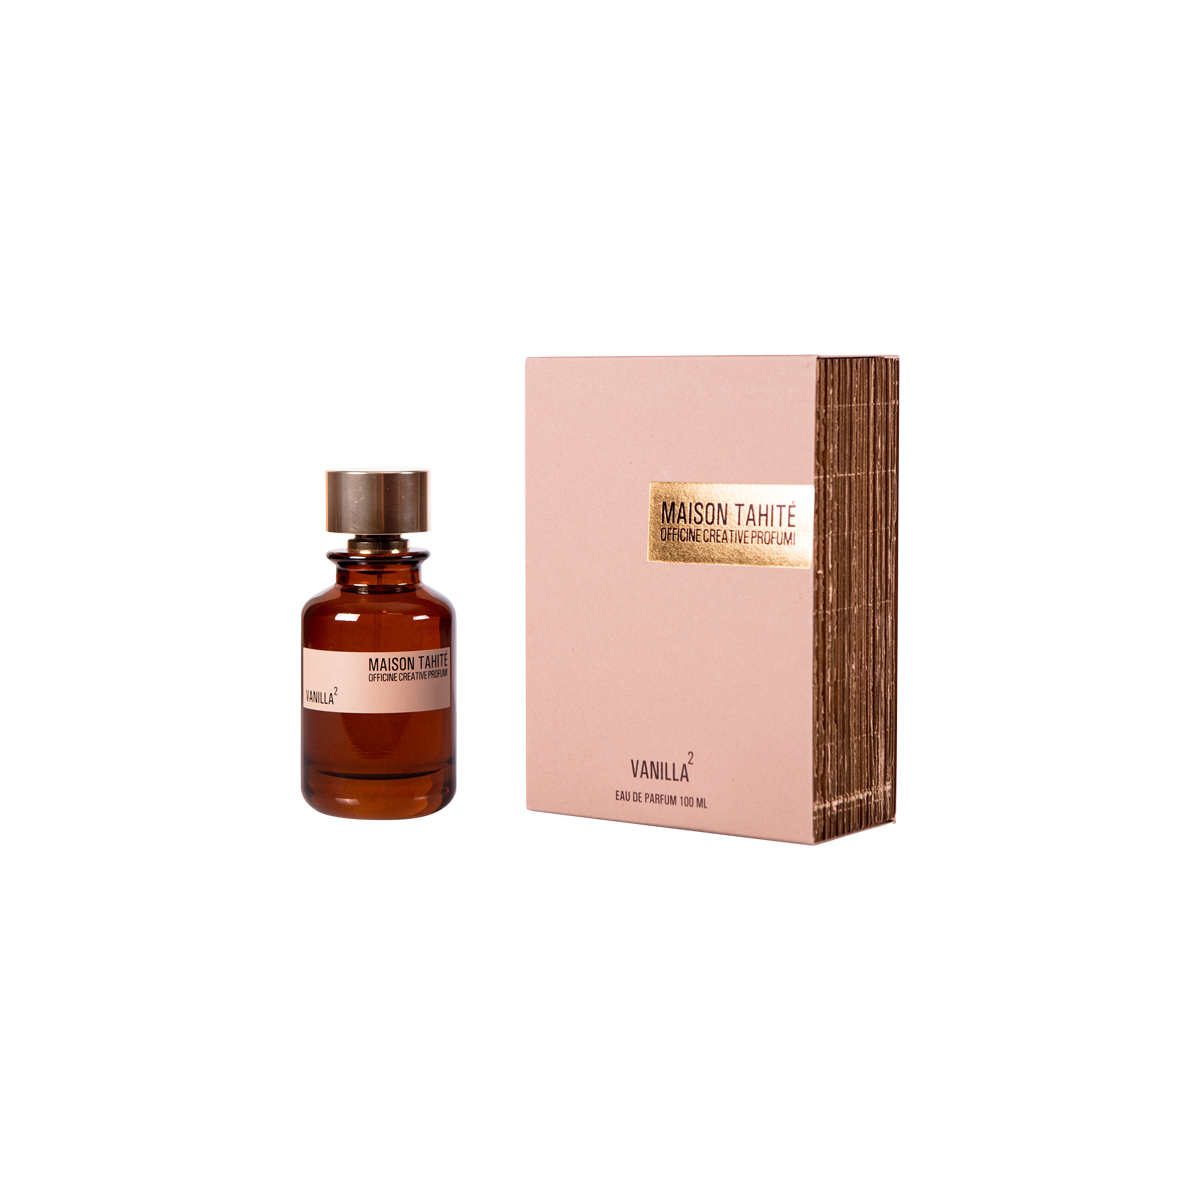 Maison Tahite - Vanilla2 Eau de Parfum